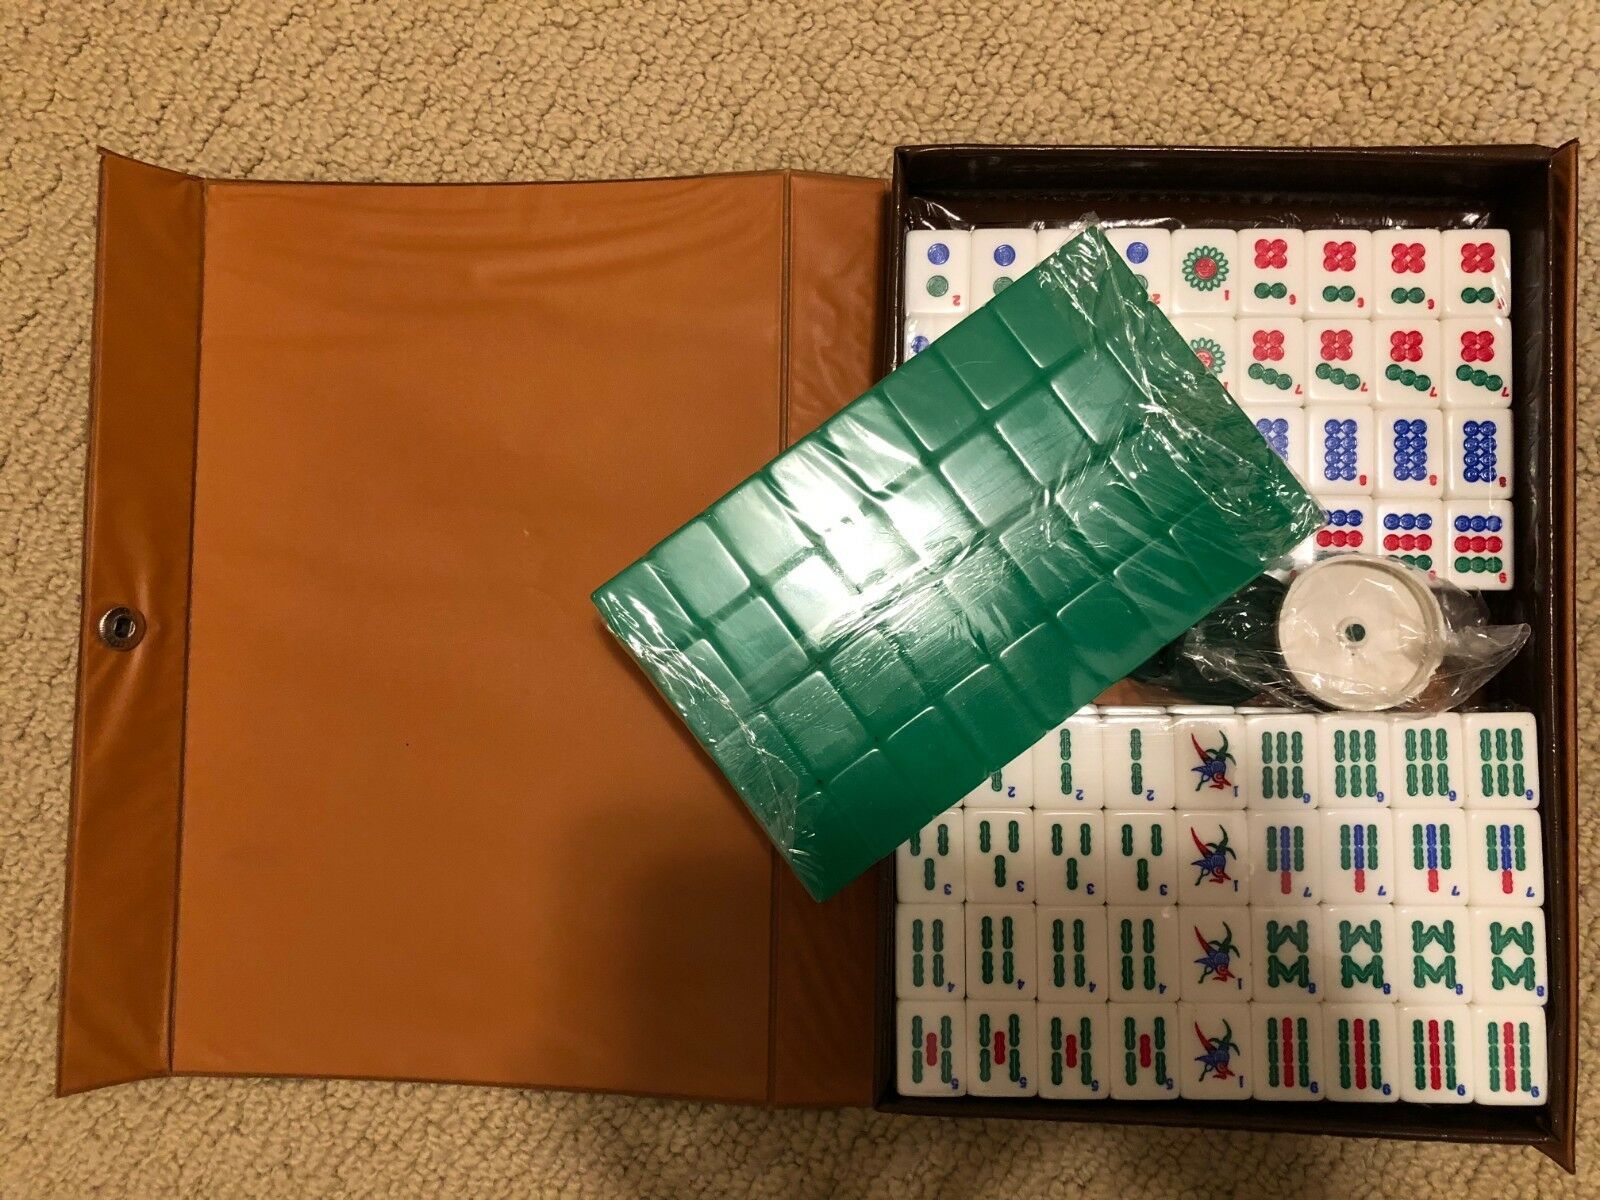 Mini Mah-jong Set Green & White 144 Tiles Travel Pack With Portable Mahjong Box